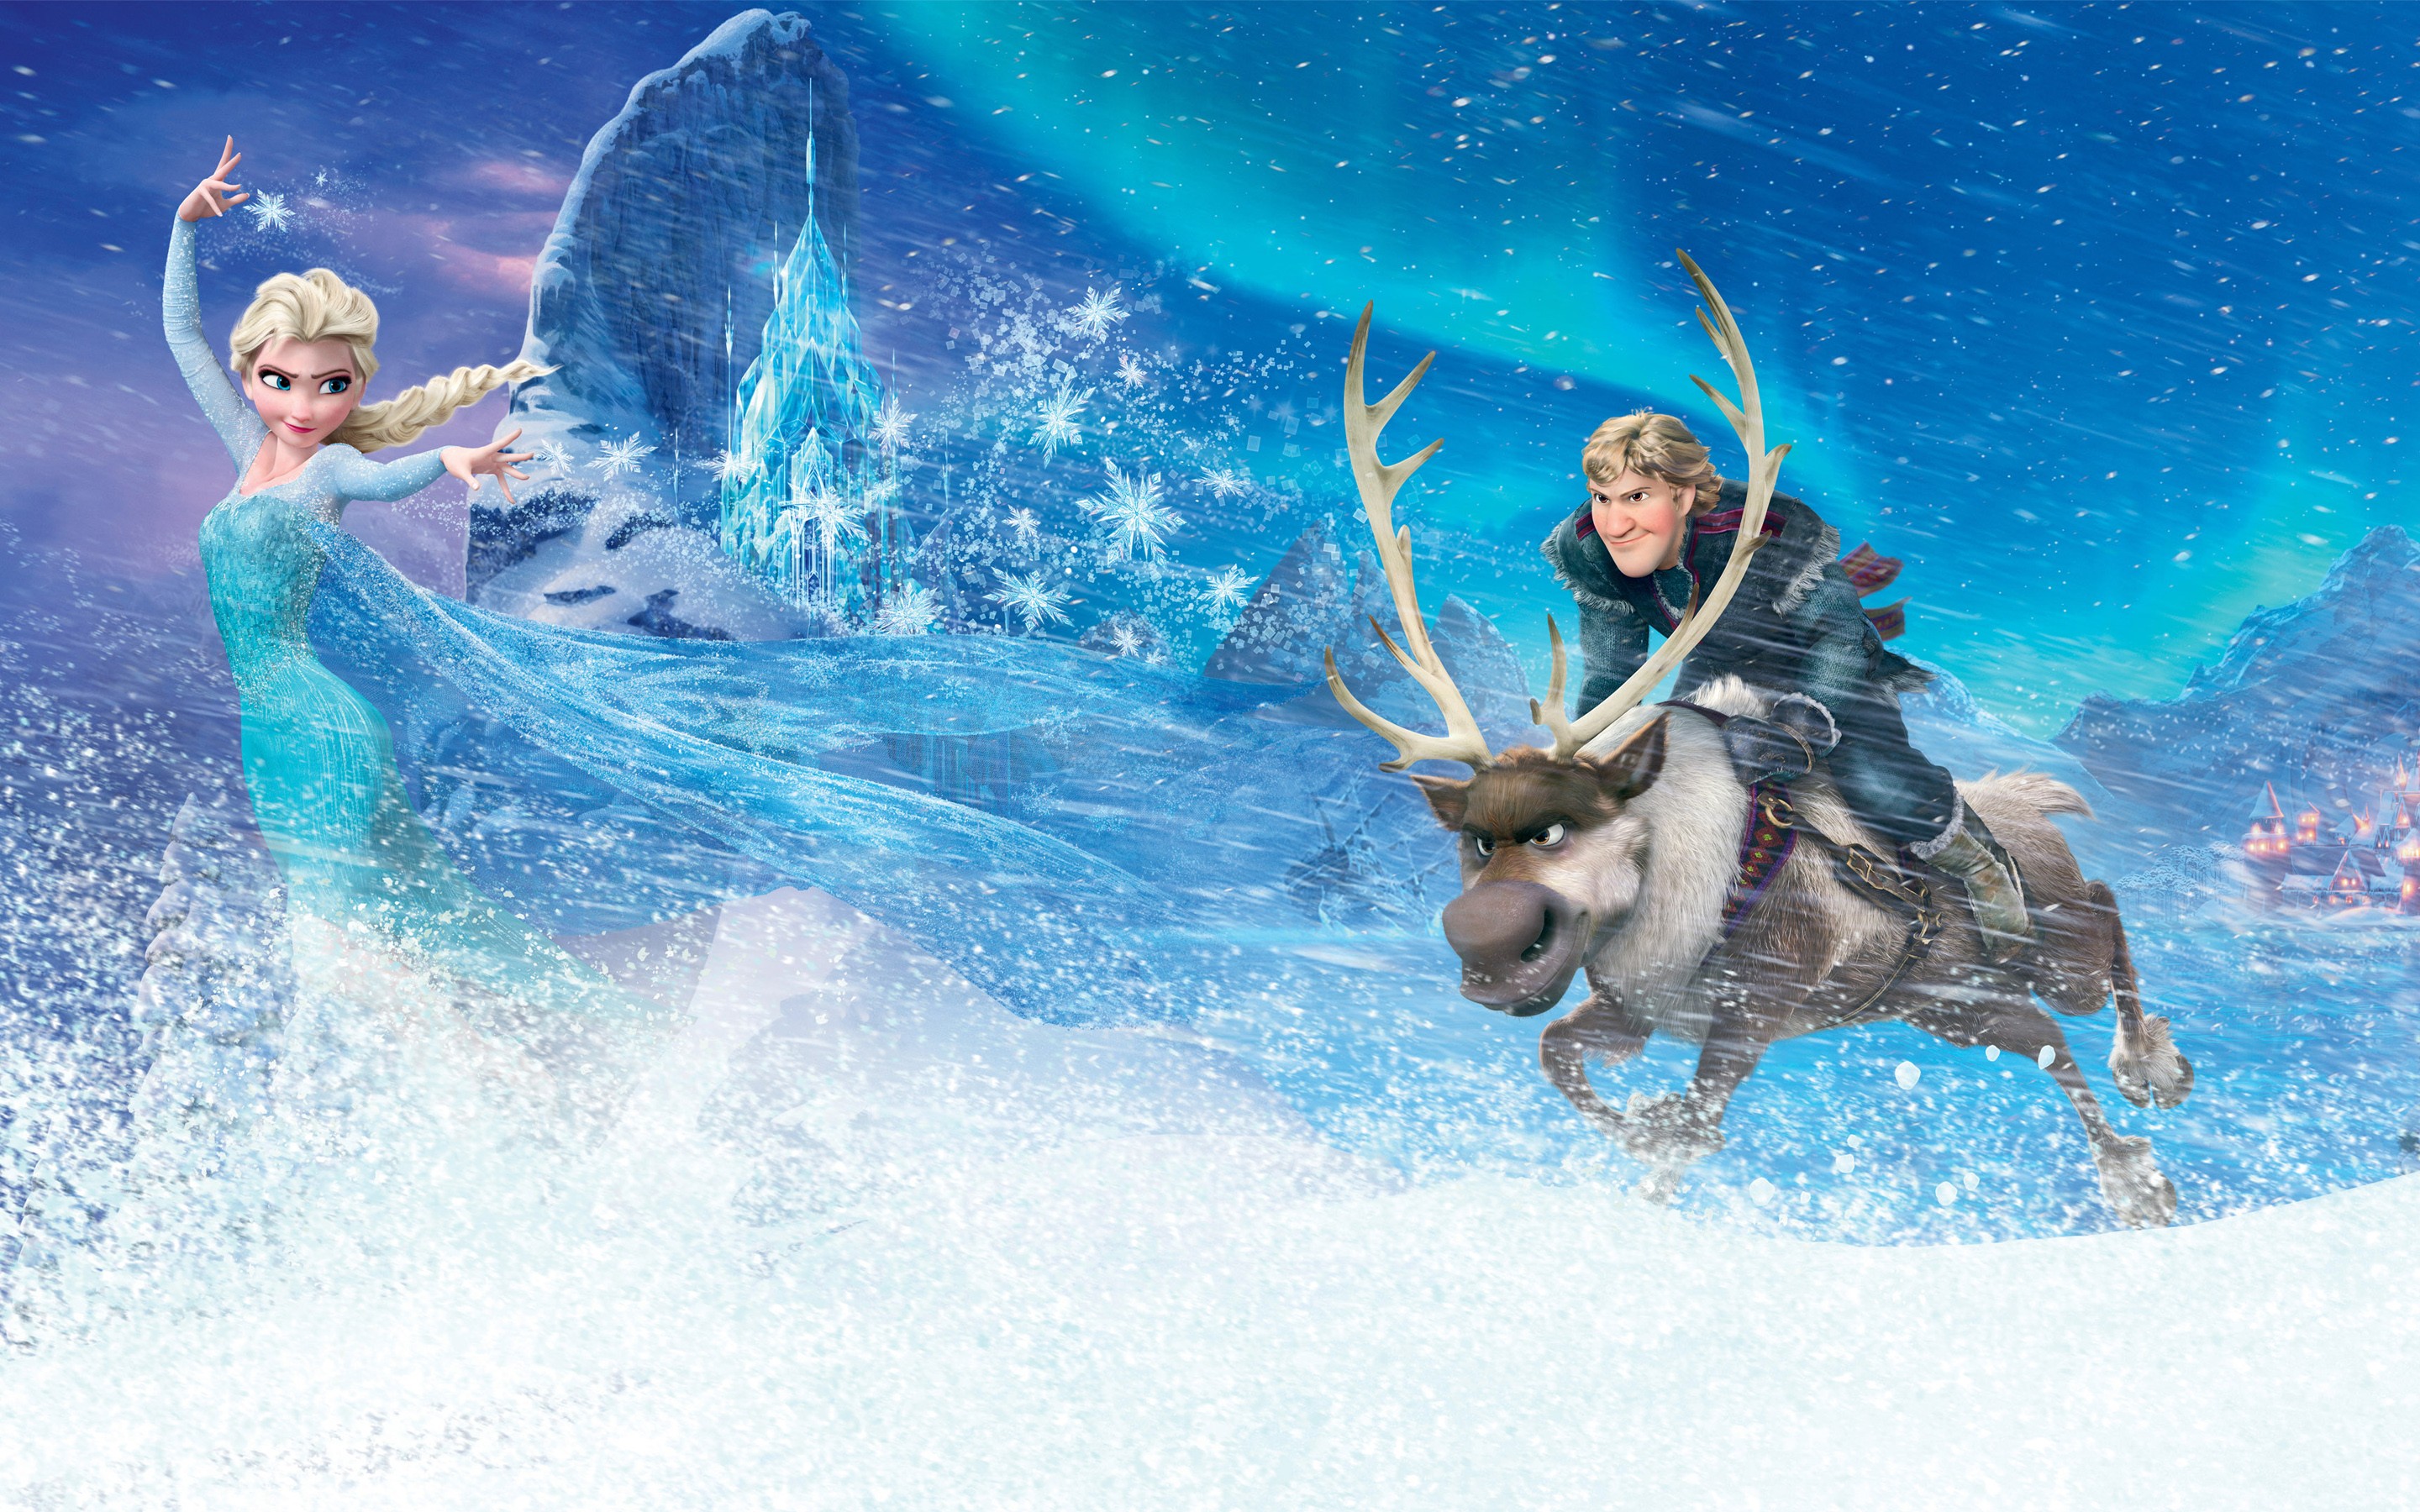 frozen movie wallpaper,reindeer,deer,illustration,fictional character,sky